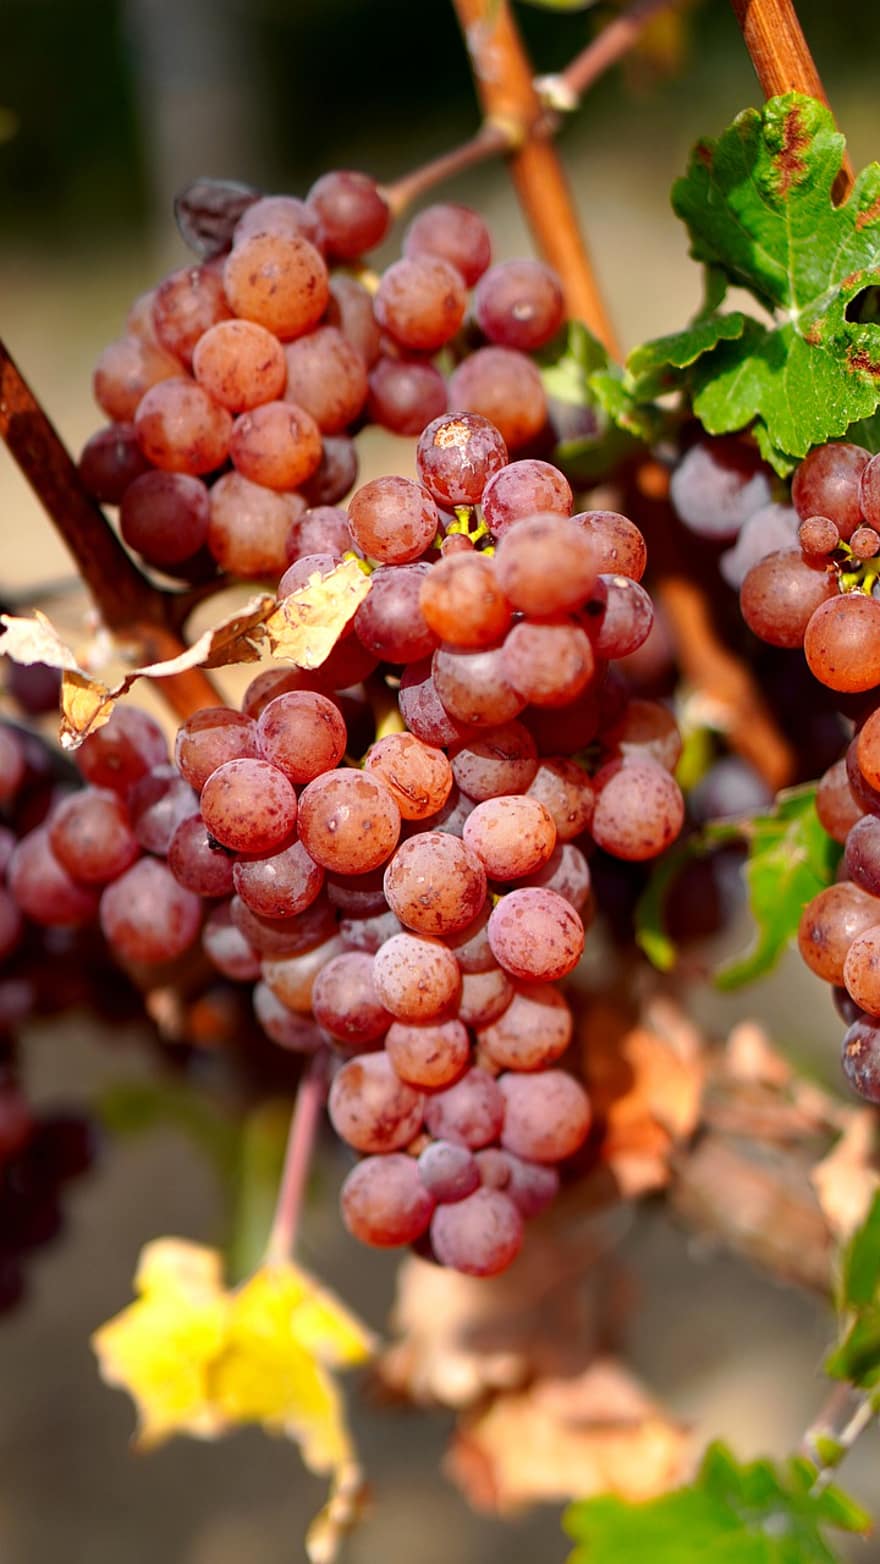 druiven, fruit, wijngaard, wijnstok, voedsel, gezond, vitaminen, voeding, wijnbouw, landbouw